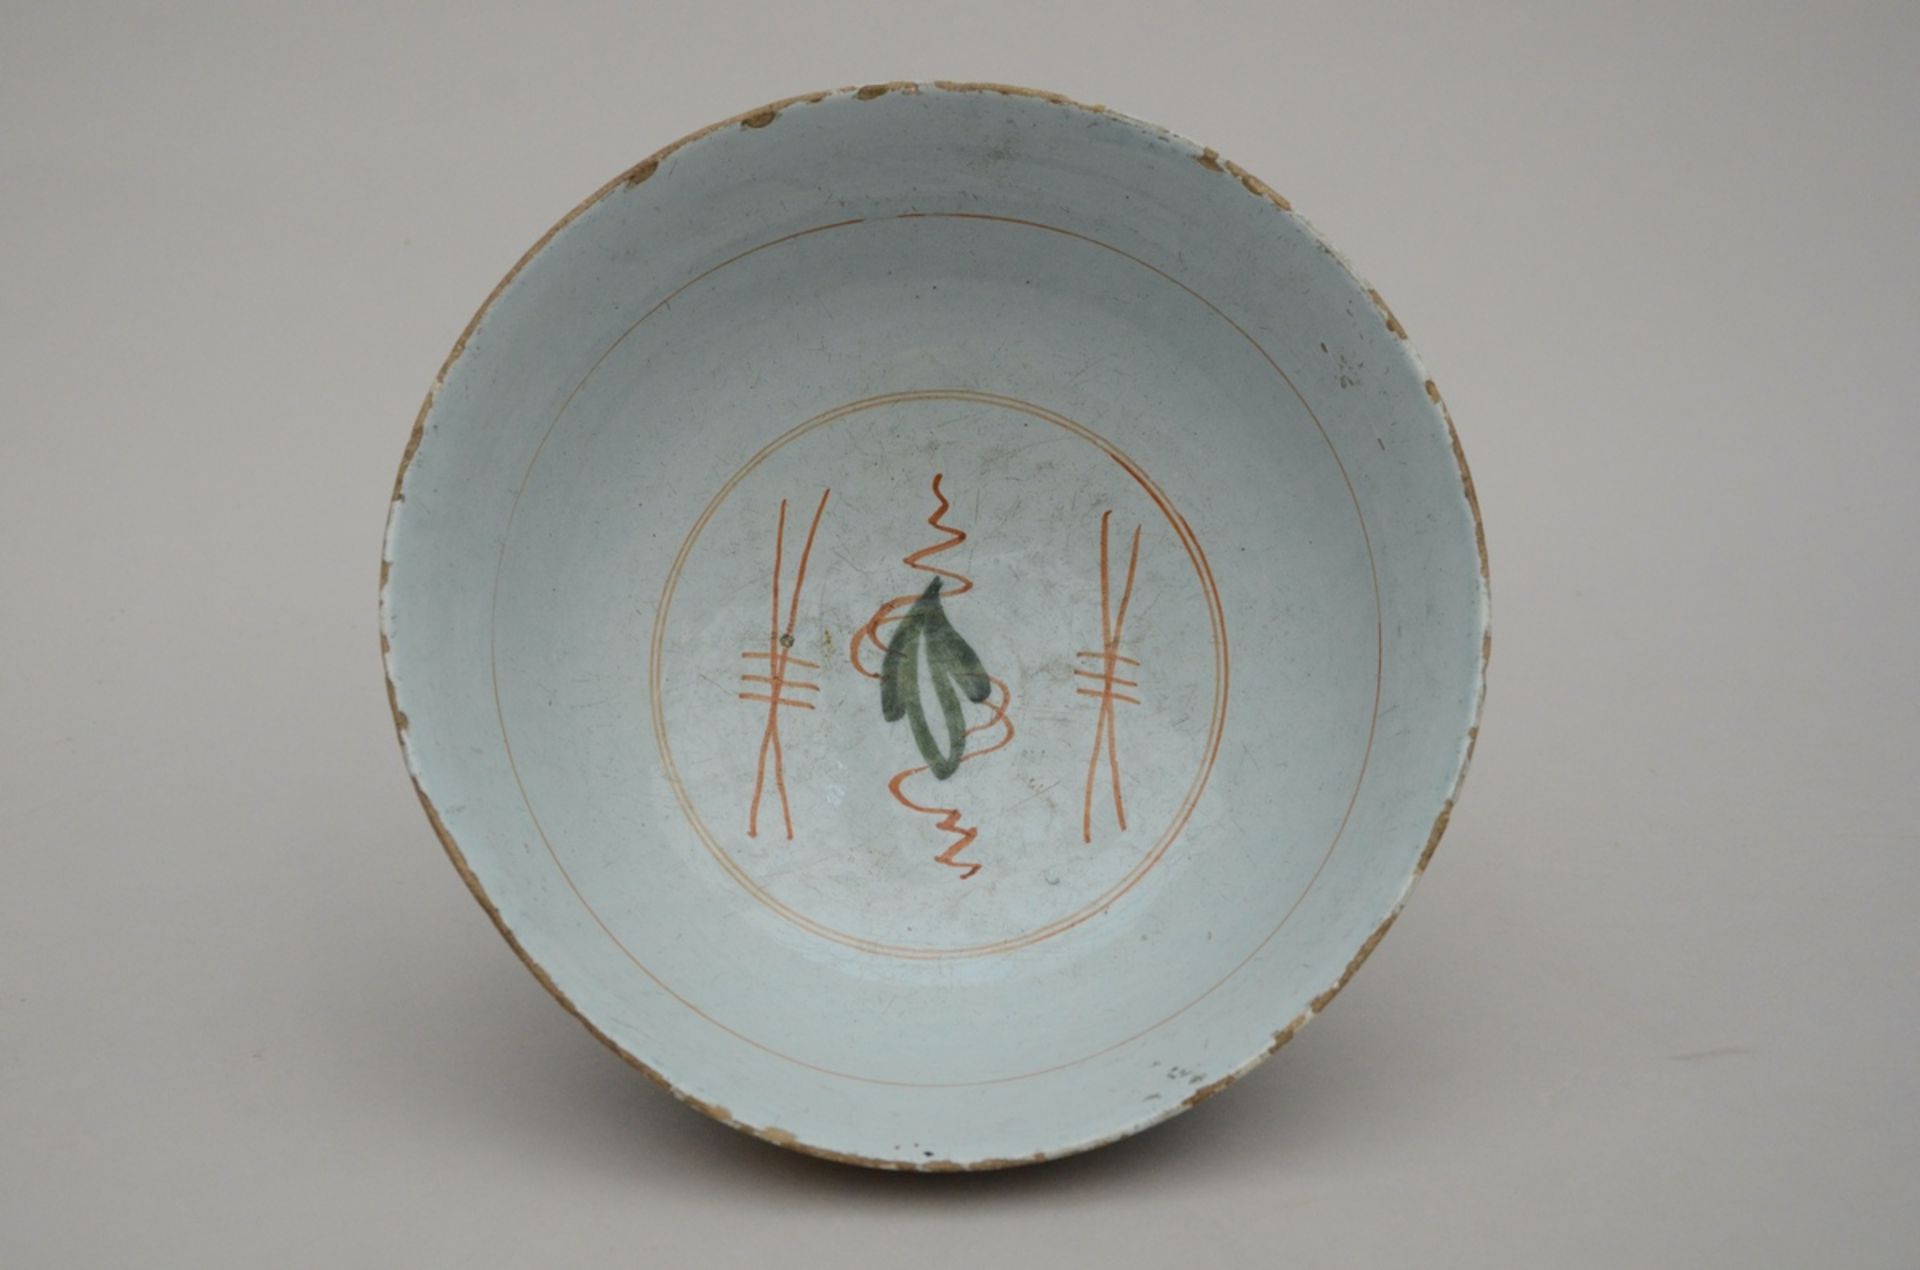 A Delft polychrome bowl 18th Century (h11.5 dia25.5cm) - Image 2 of 3